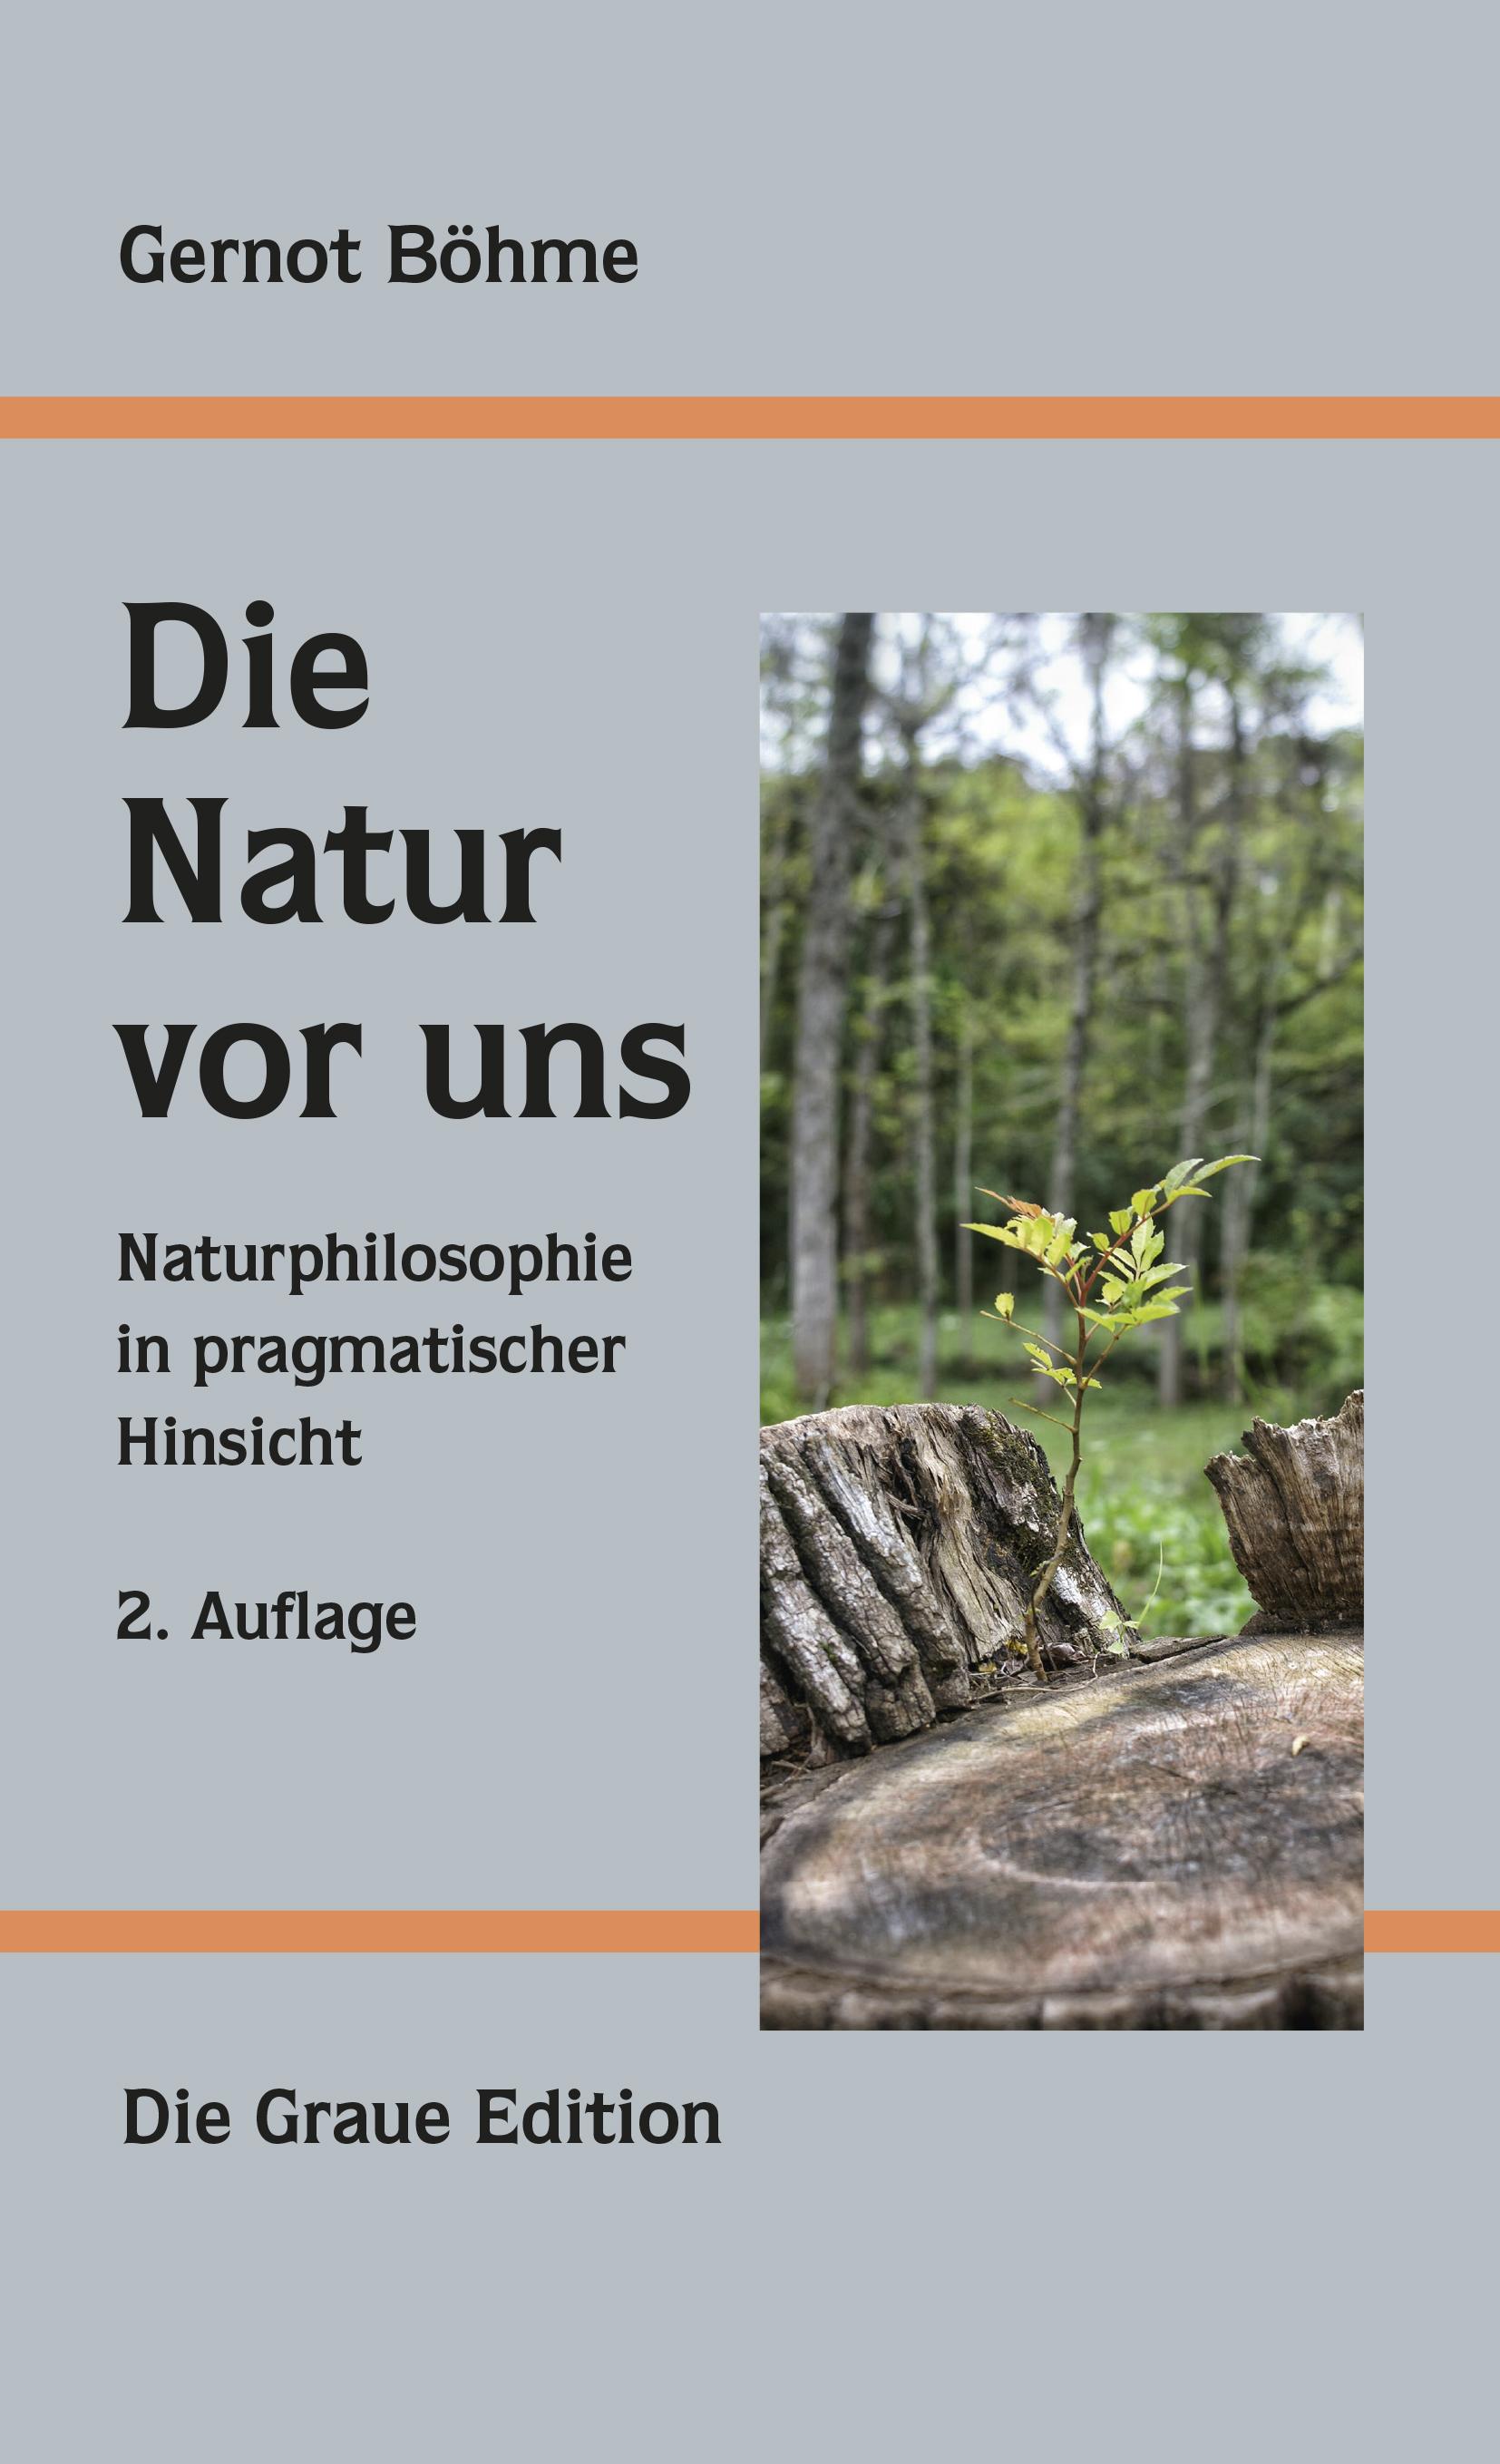 Die Natur vor uns, 2. Auflage - Böhme, Gernot